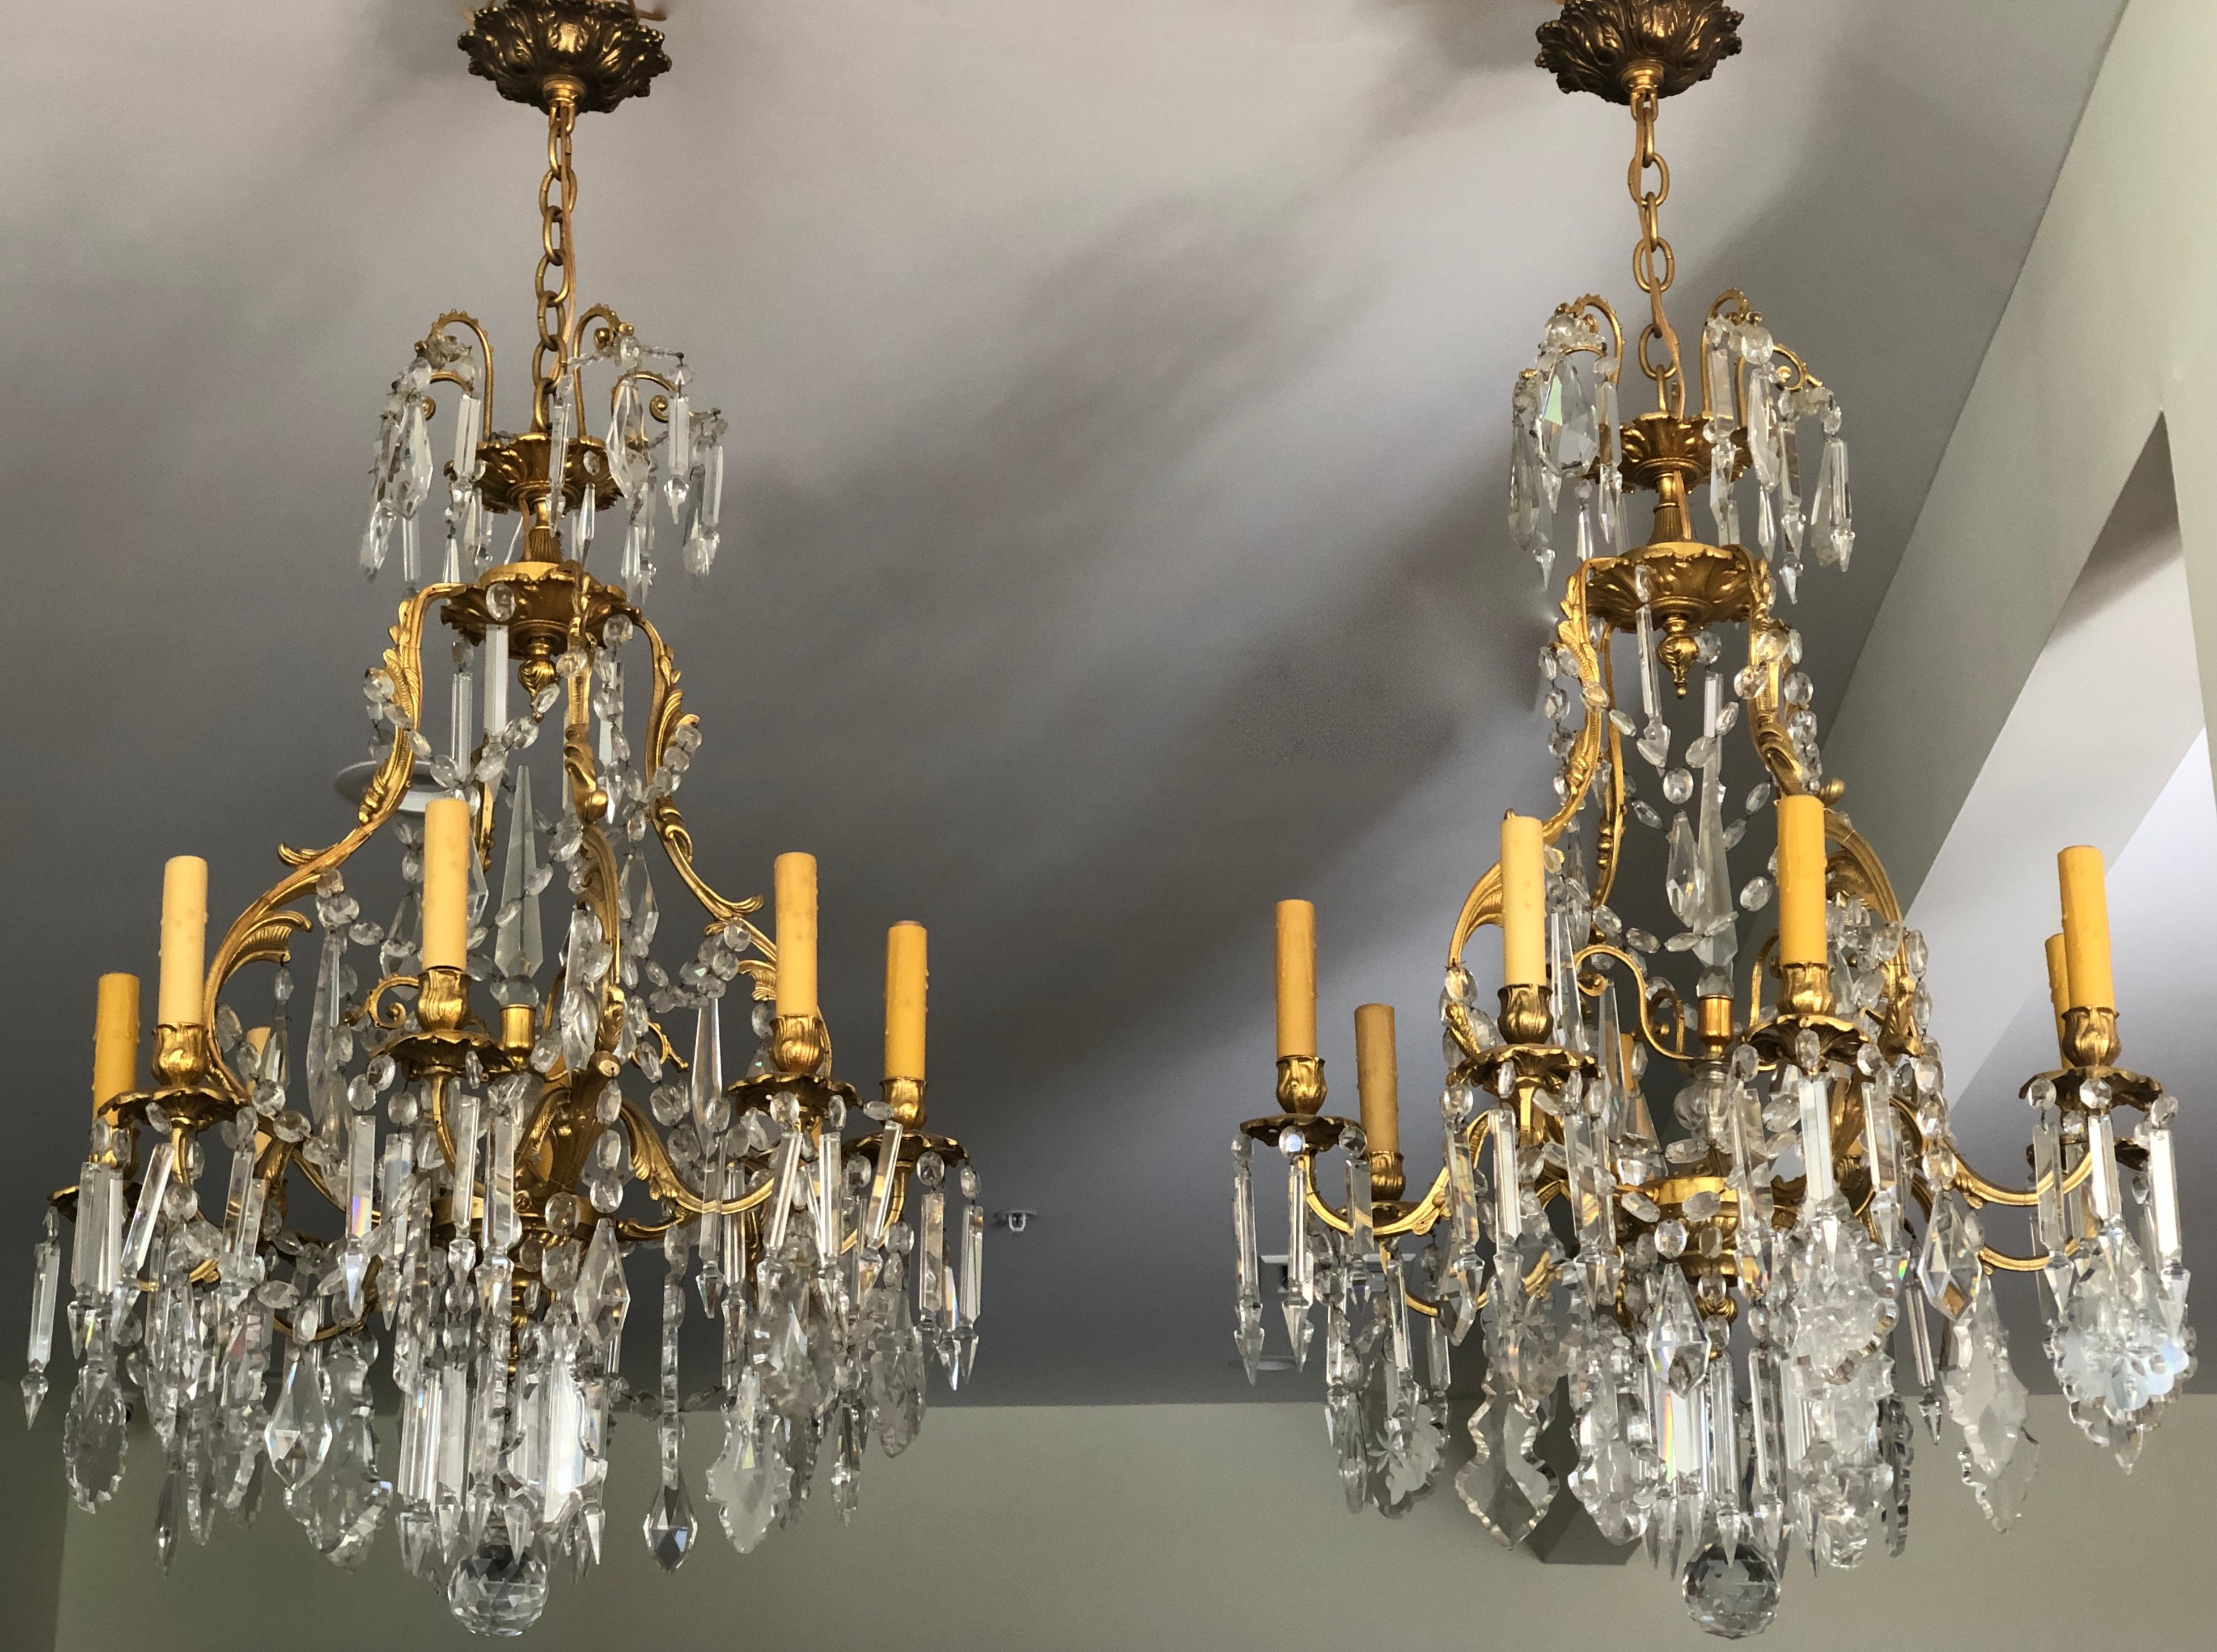 Zwei hochwertige französische Louis-XV-Kronleuchter aus dem 19. Jahrhundert. 8 Licht.
Ormolu-Bronze und Kristall mit Einfluss des Rokoko. Feiner Guss und Vergoldung.
Die Höhe gilt für Kronleuchter und Baldachin. Es kann eine beliebige Anzahl von